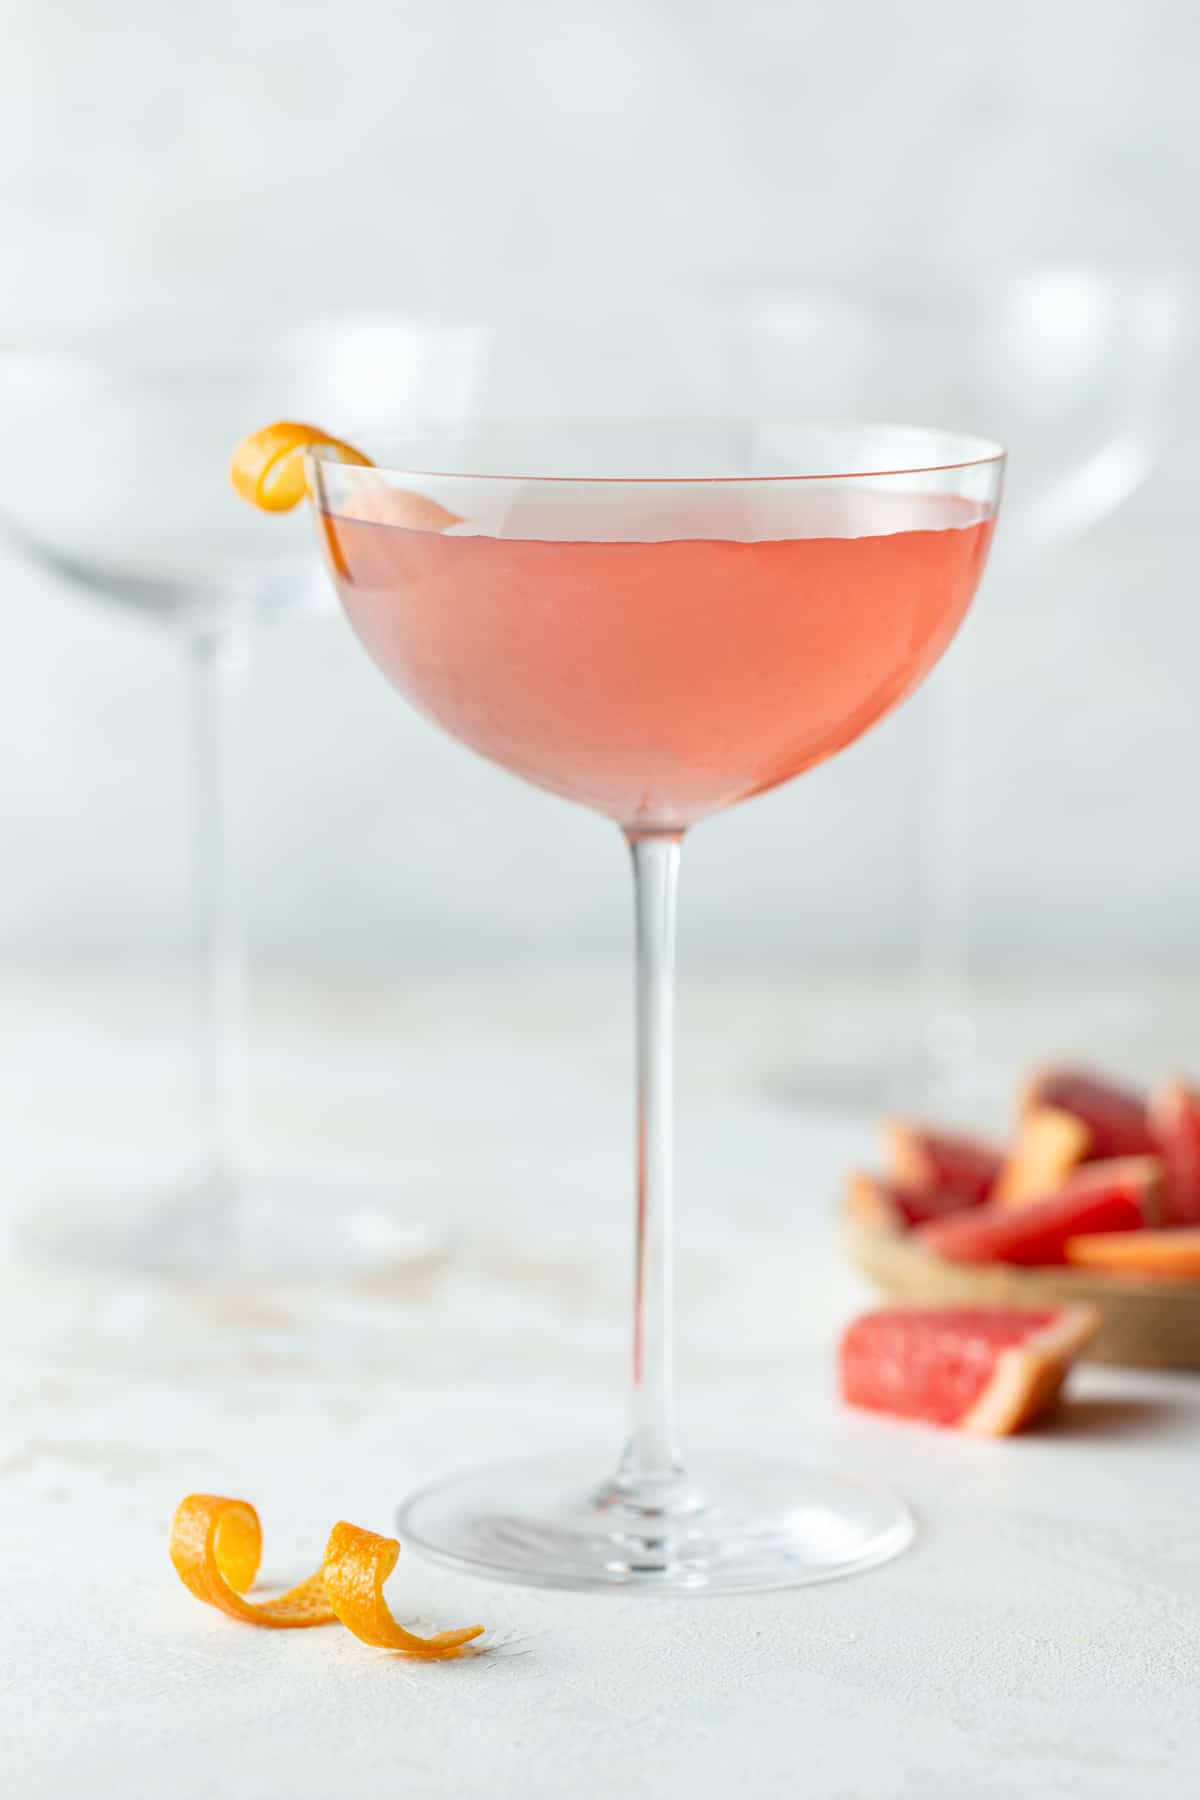 A glass of Grapefruit Martini.